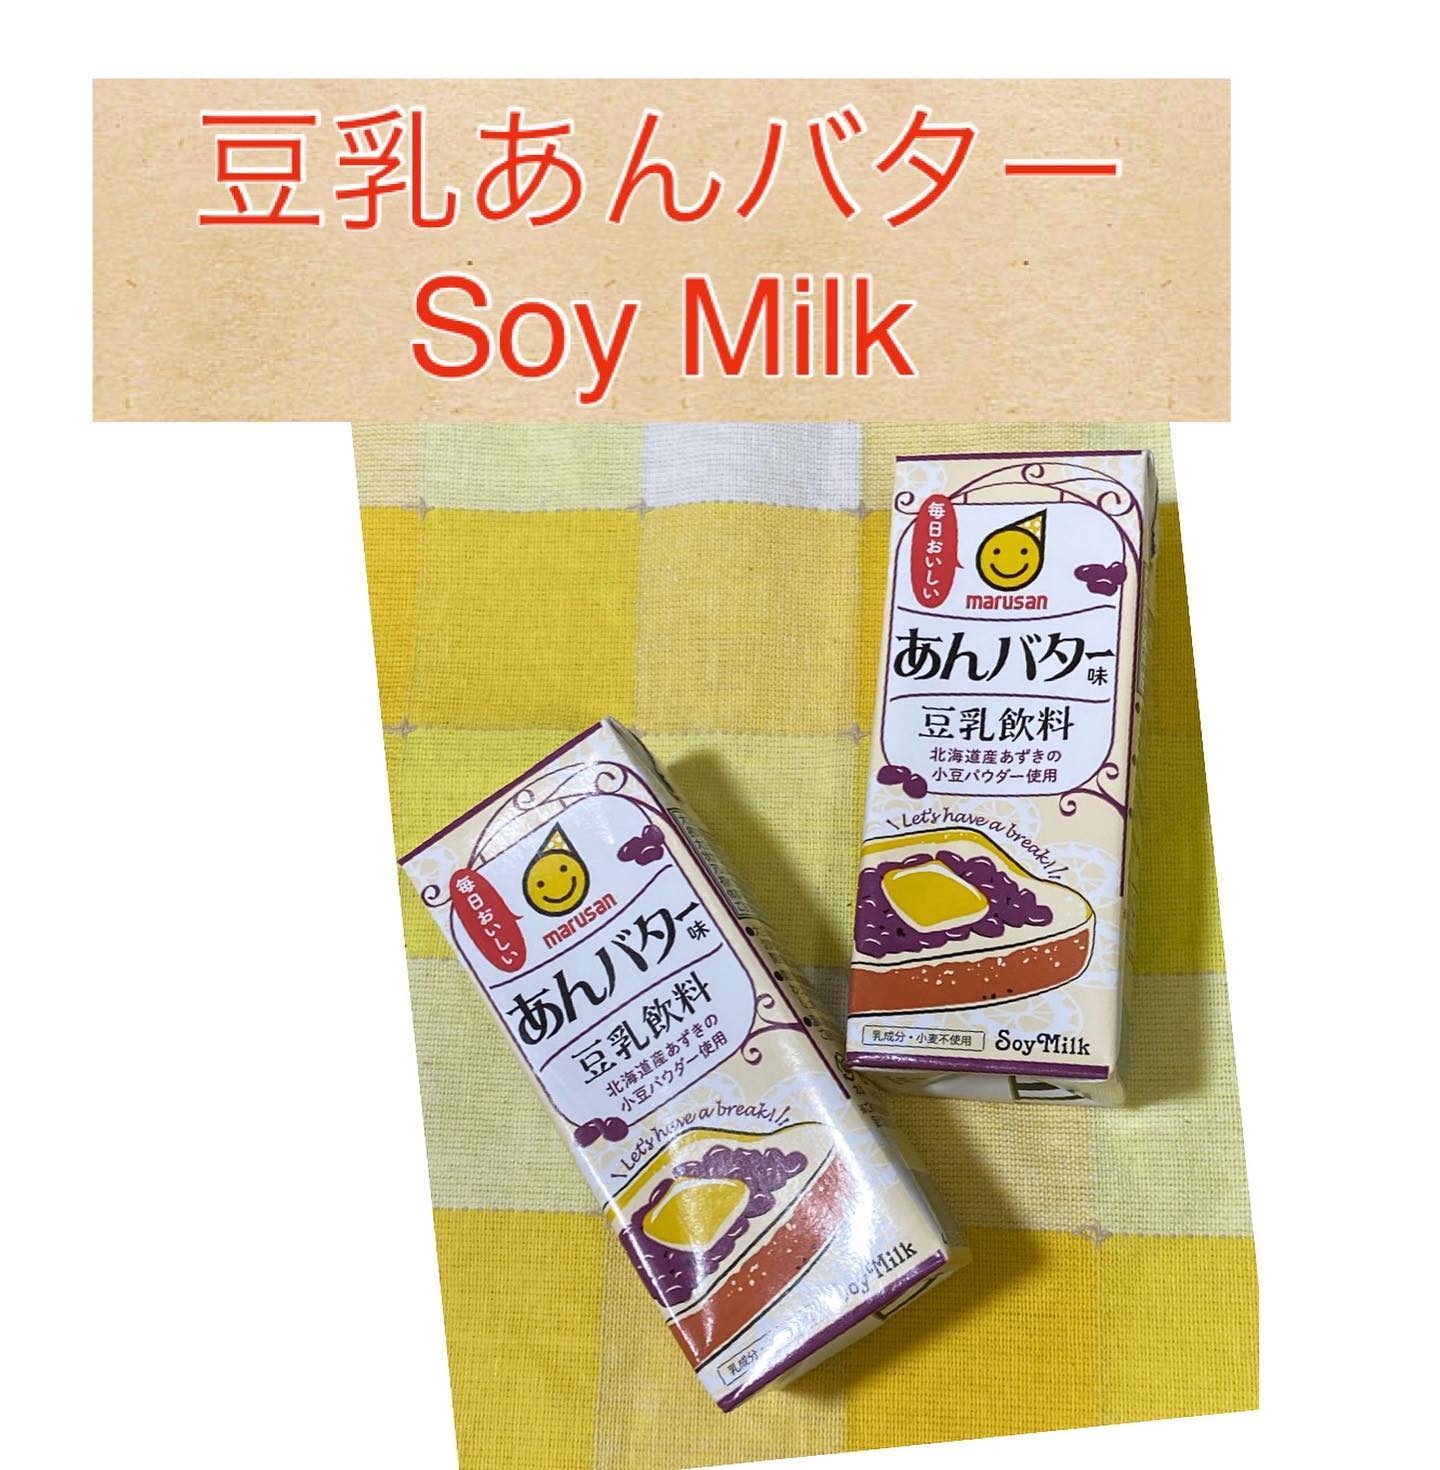 口コミ投稿：#豆乳 #あんバター #程よい甘さ #美味しい #soymilk #redbean #butter #delicious #f…